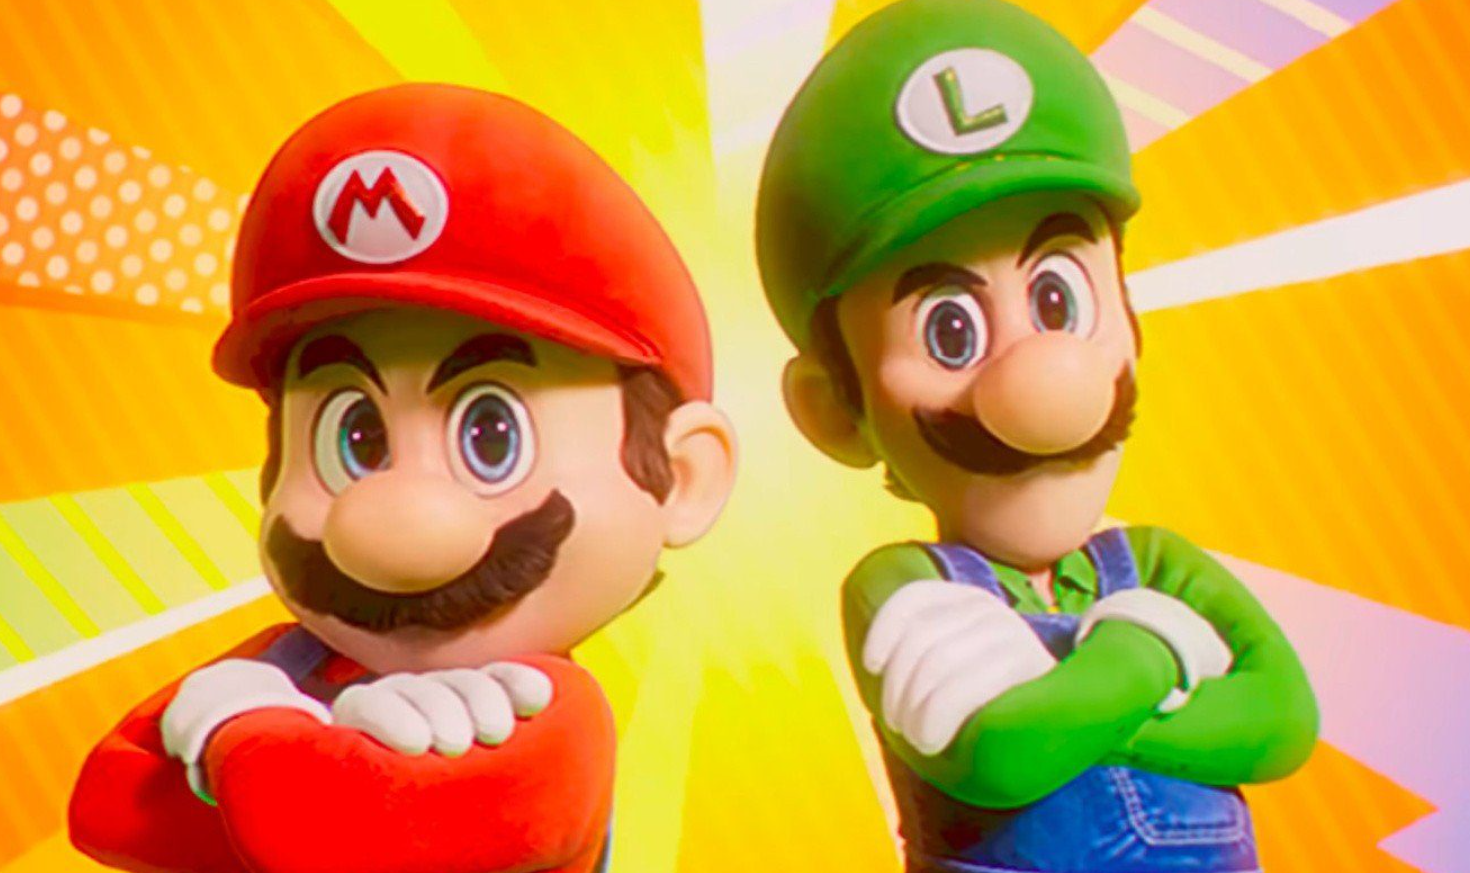 Nintendo 2 Announces New Mario Game